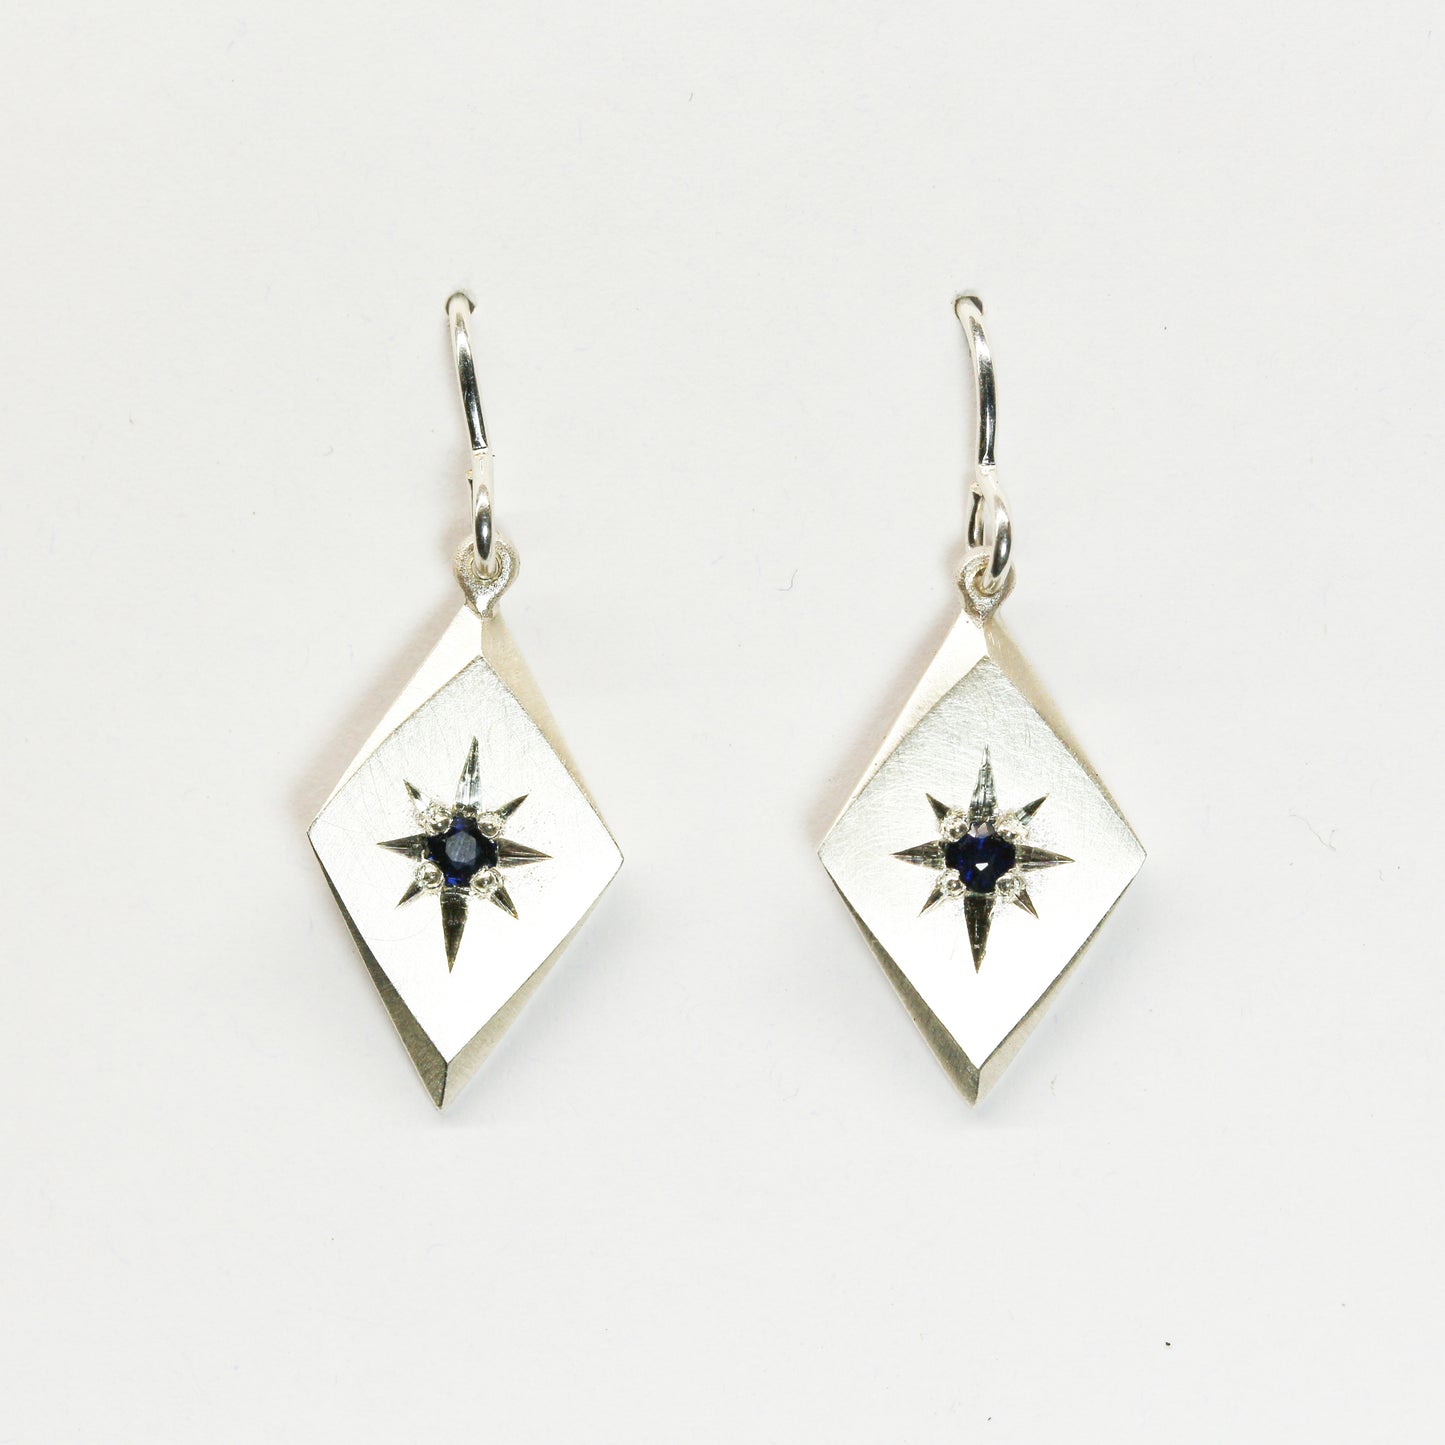 Guiding star earrings